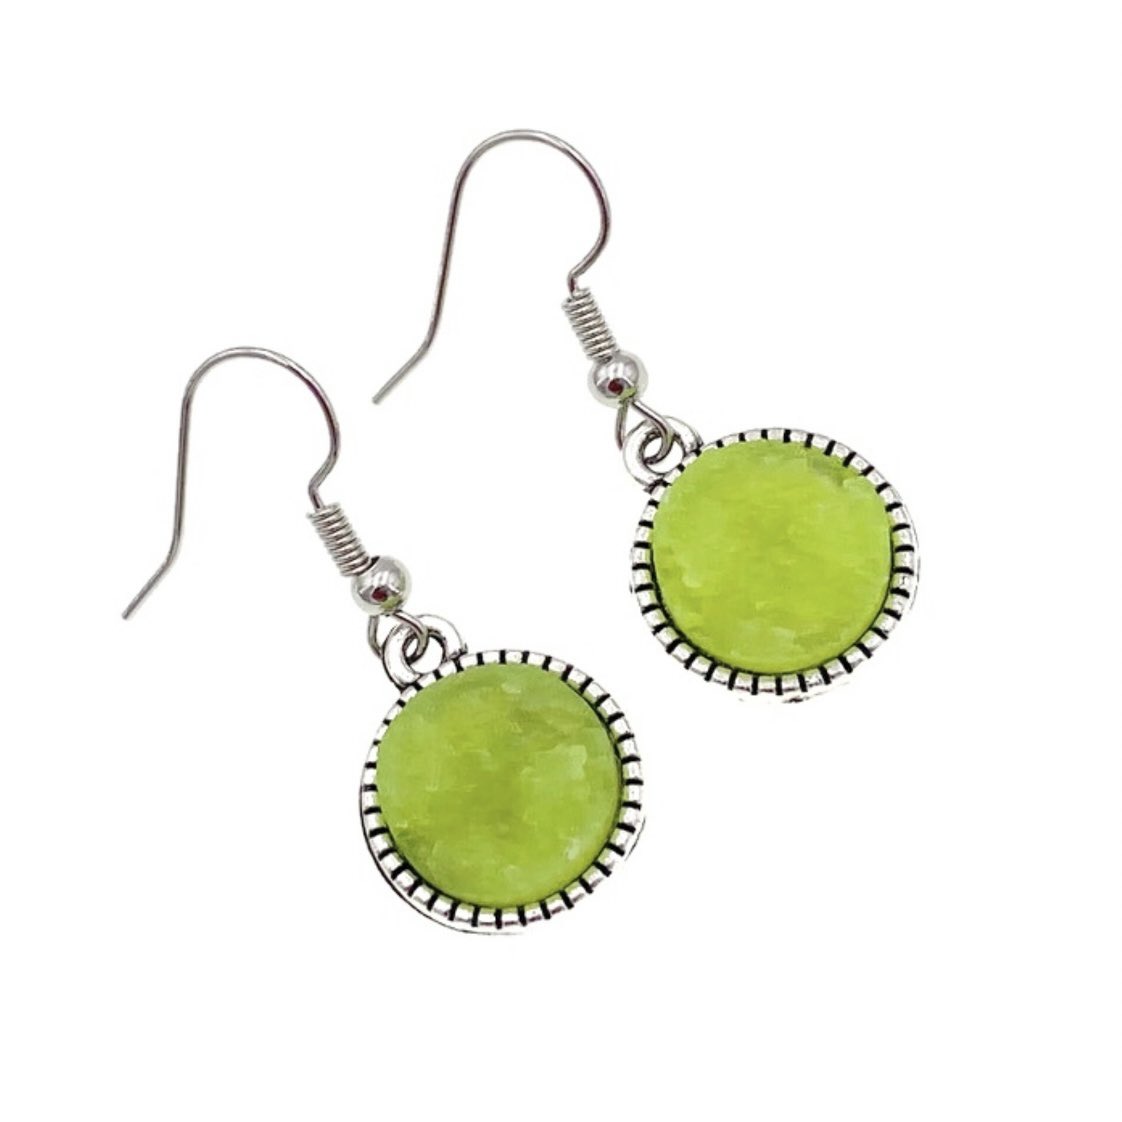 Lime green dangle earrings #handmadejewelry #etsyfinds #earrings #shopsmall #gift zaverdesigns.etsy.com/listing/245911…